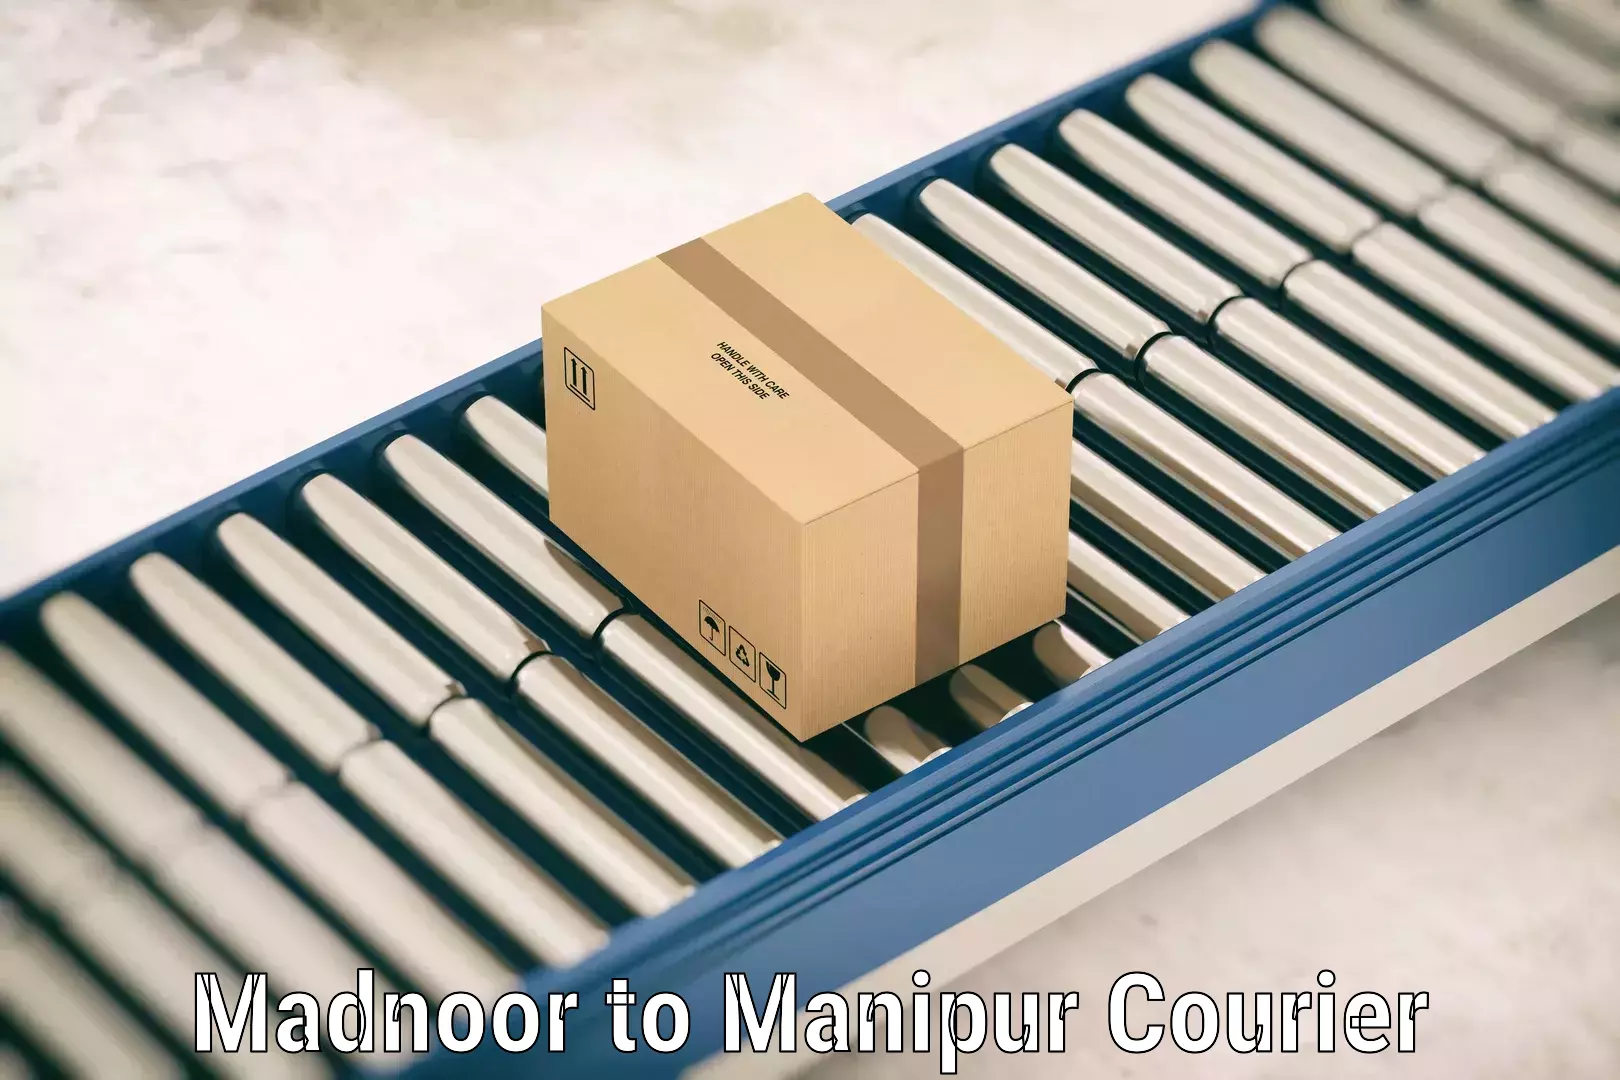 Luggage transit service Madnoor to Churachandpur